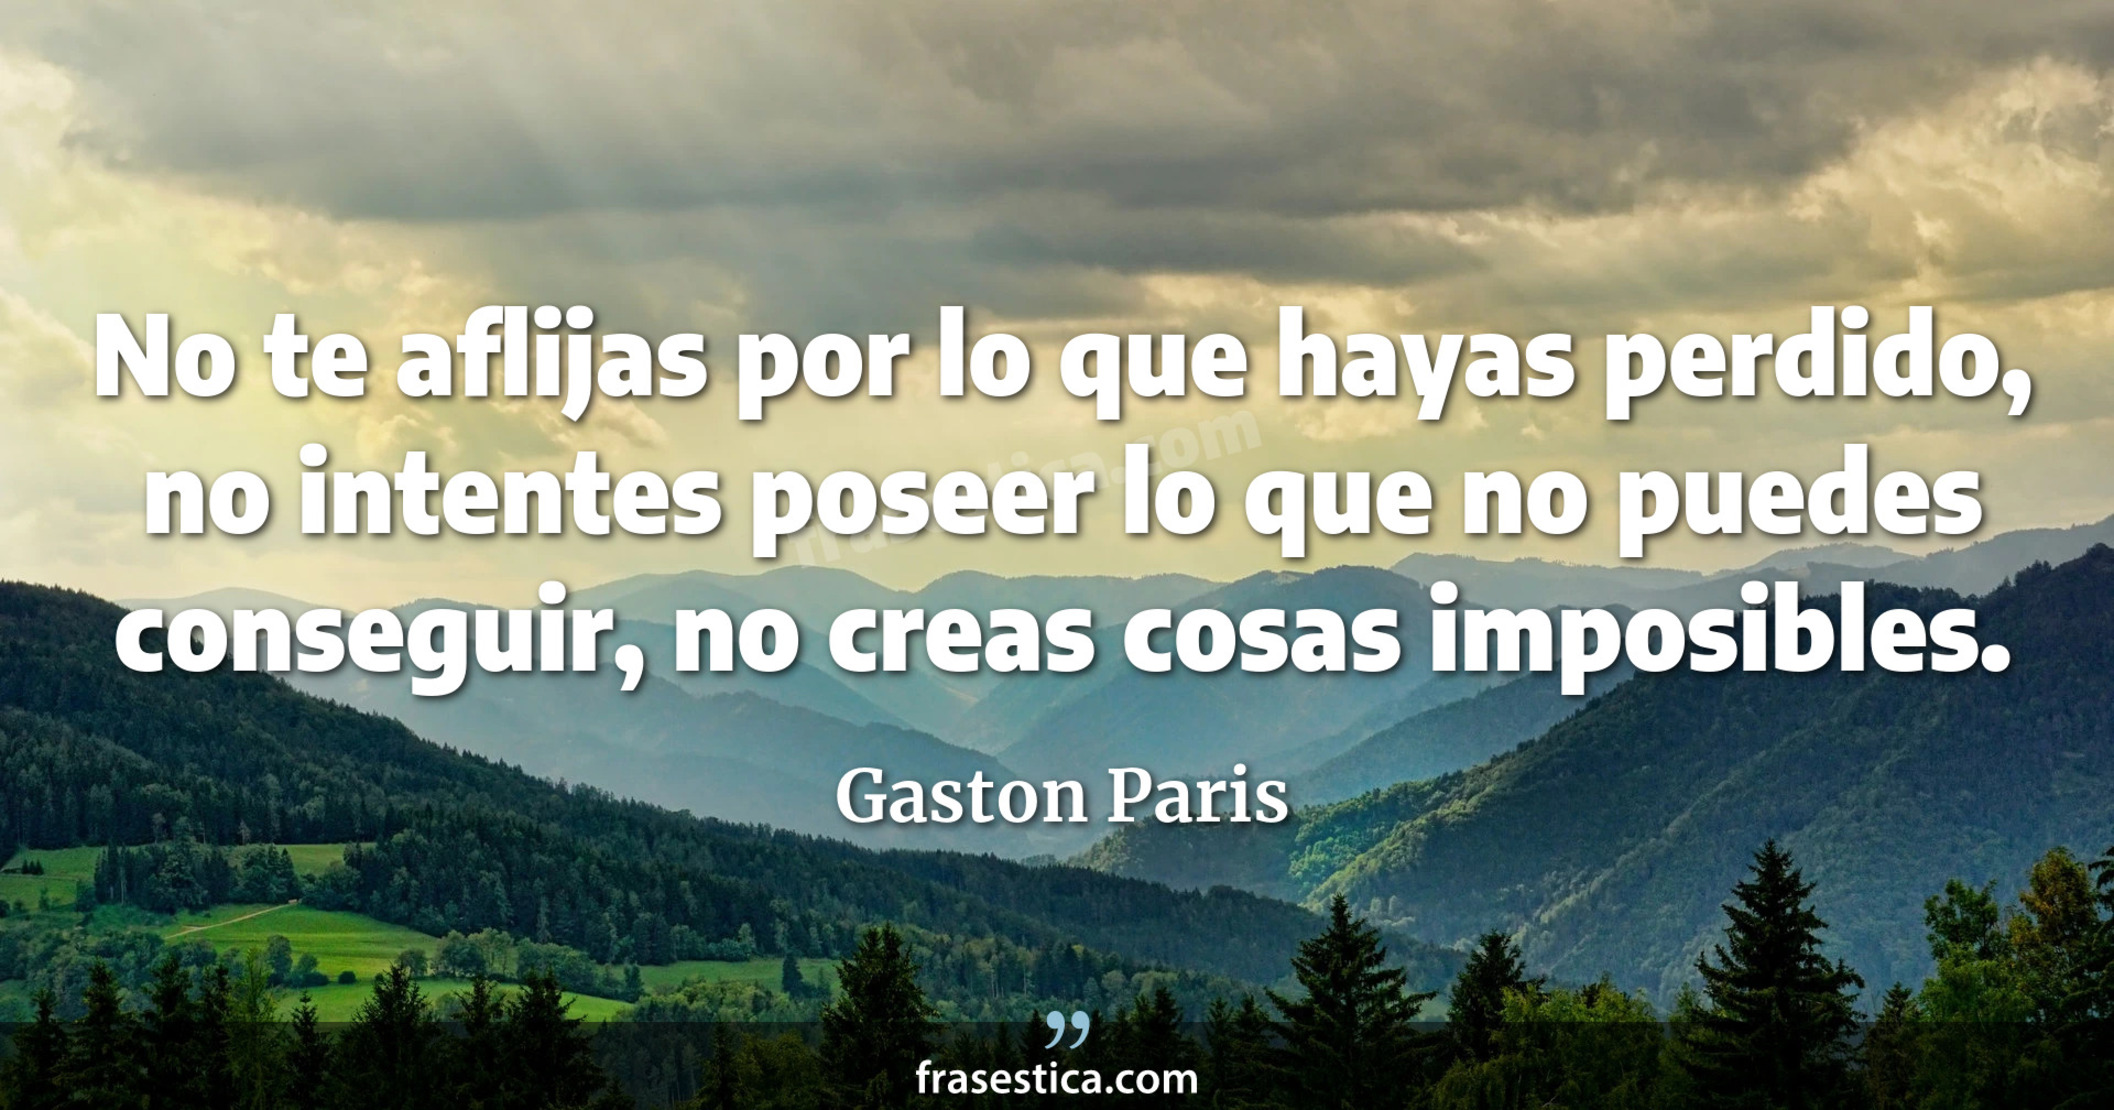 No te aflijas por lo que hayas perdido, no intentes poseer lo que no puedes conseguir, no creas cosas imposibles. - Gaston Paris